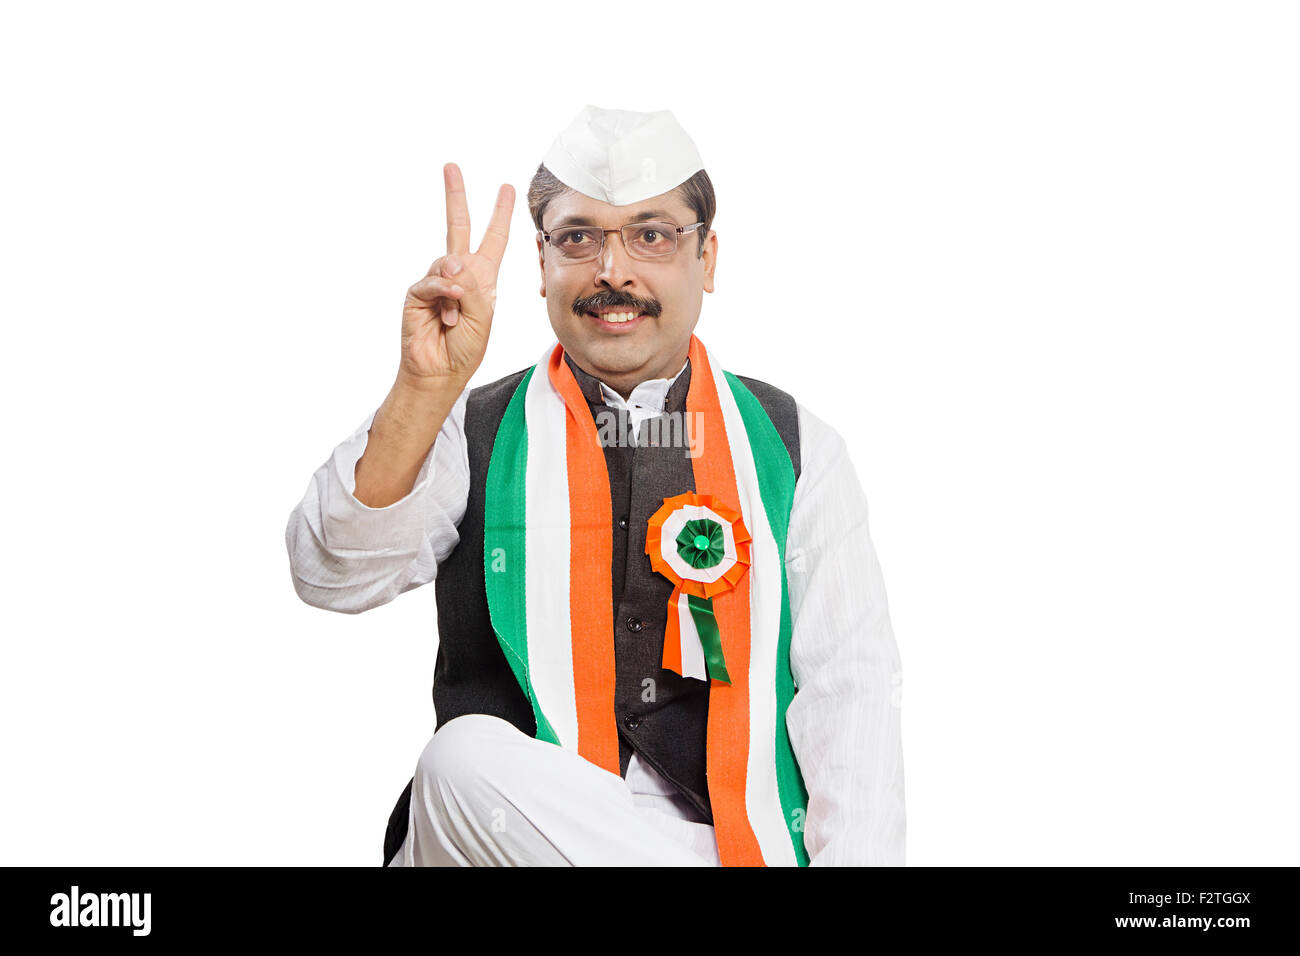 1 adultes indiens politicien Homme montrant du doigt la victoire Banque D'Images